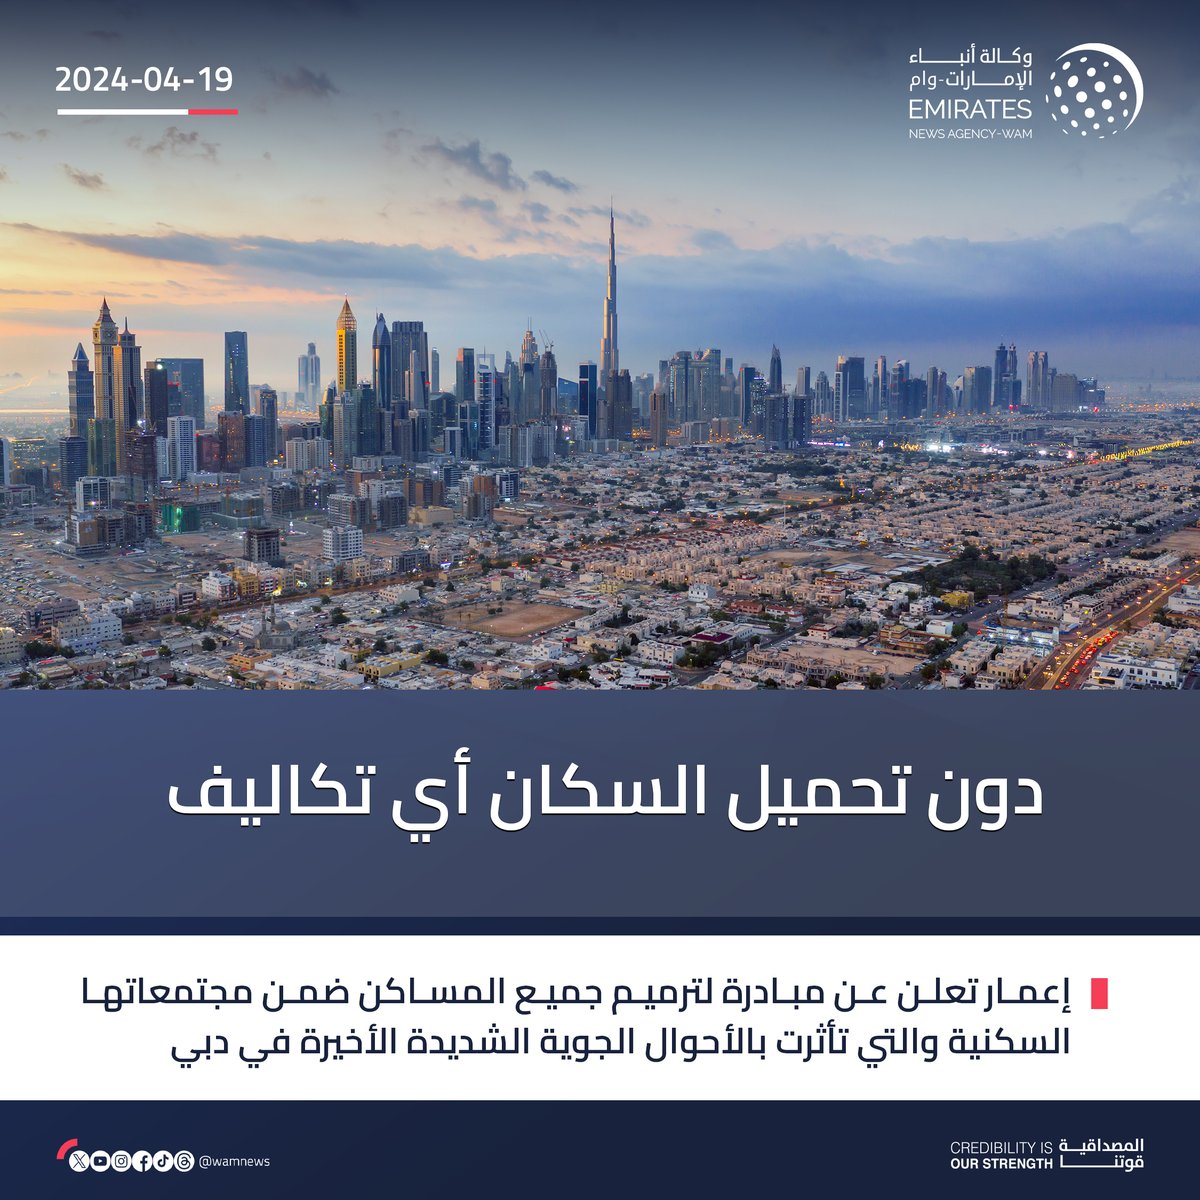 إعمار تعلن عن مبادرة لترميم جميع المساكن ضمن مجتمعاتها السكنية والتي تأثرت بالأحوال الجوية الشديدة الأخيرة في #دبي، وذلك دون تحميل السكان أي تكاليف #وام